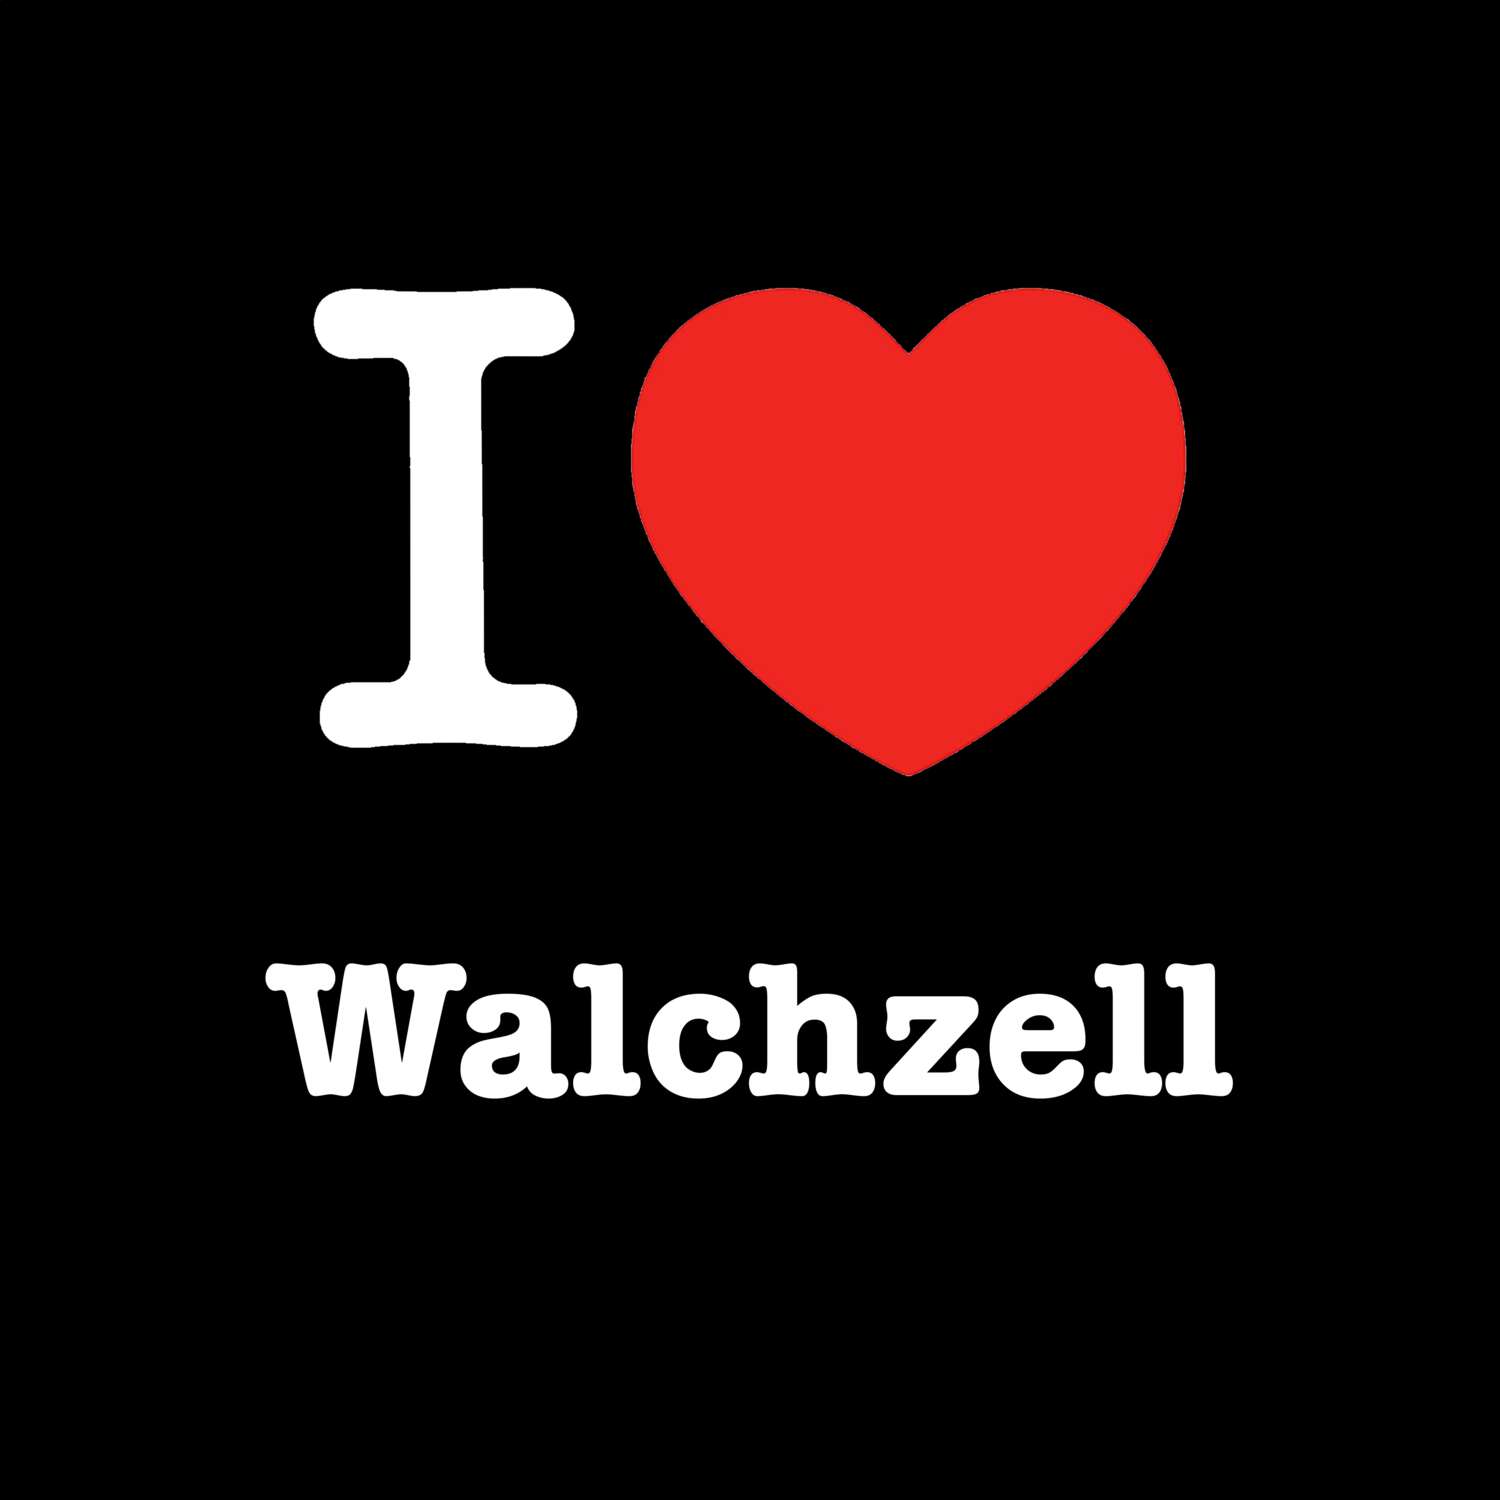 Walchzell T-Shirt »I love«